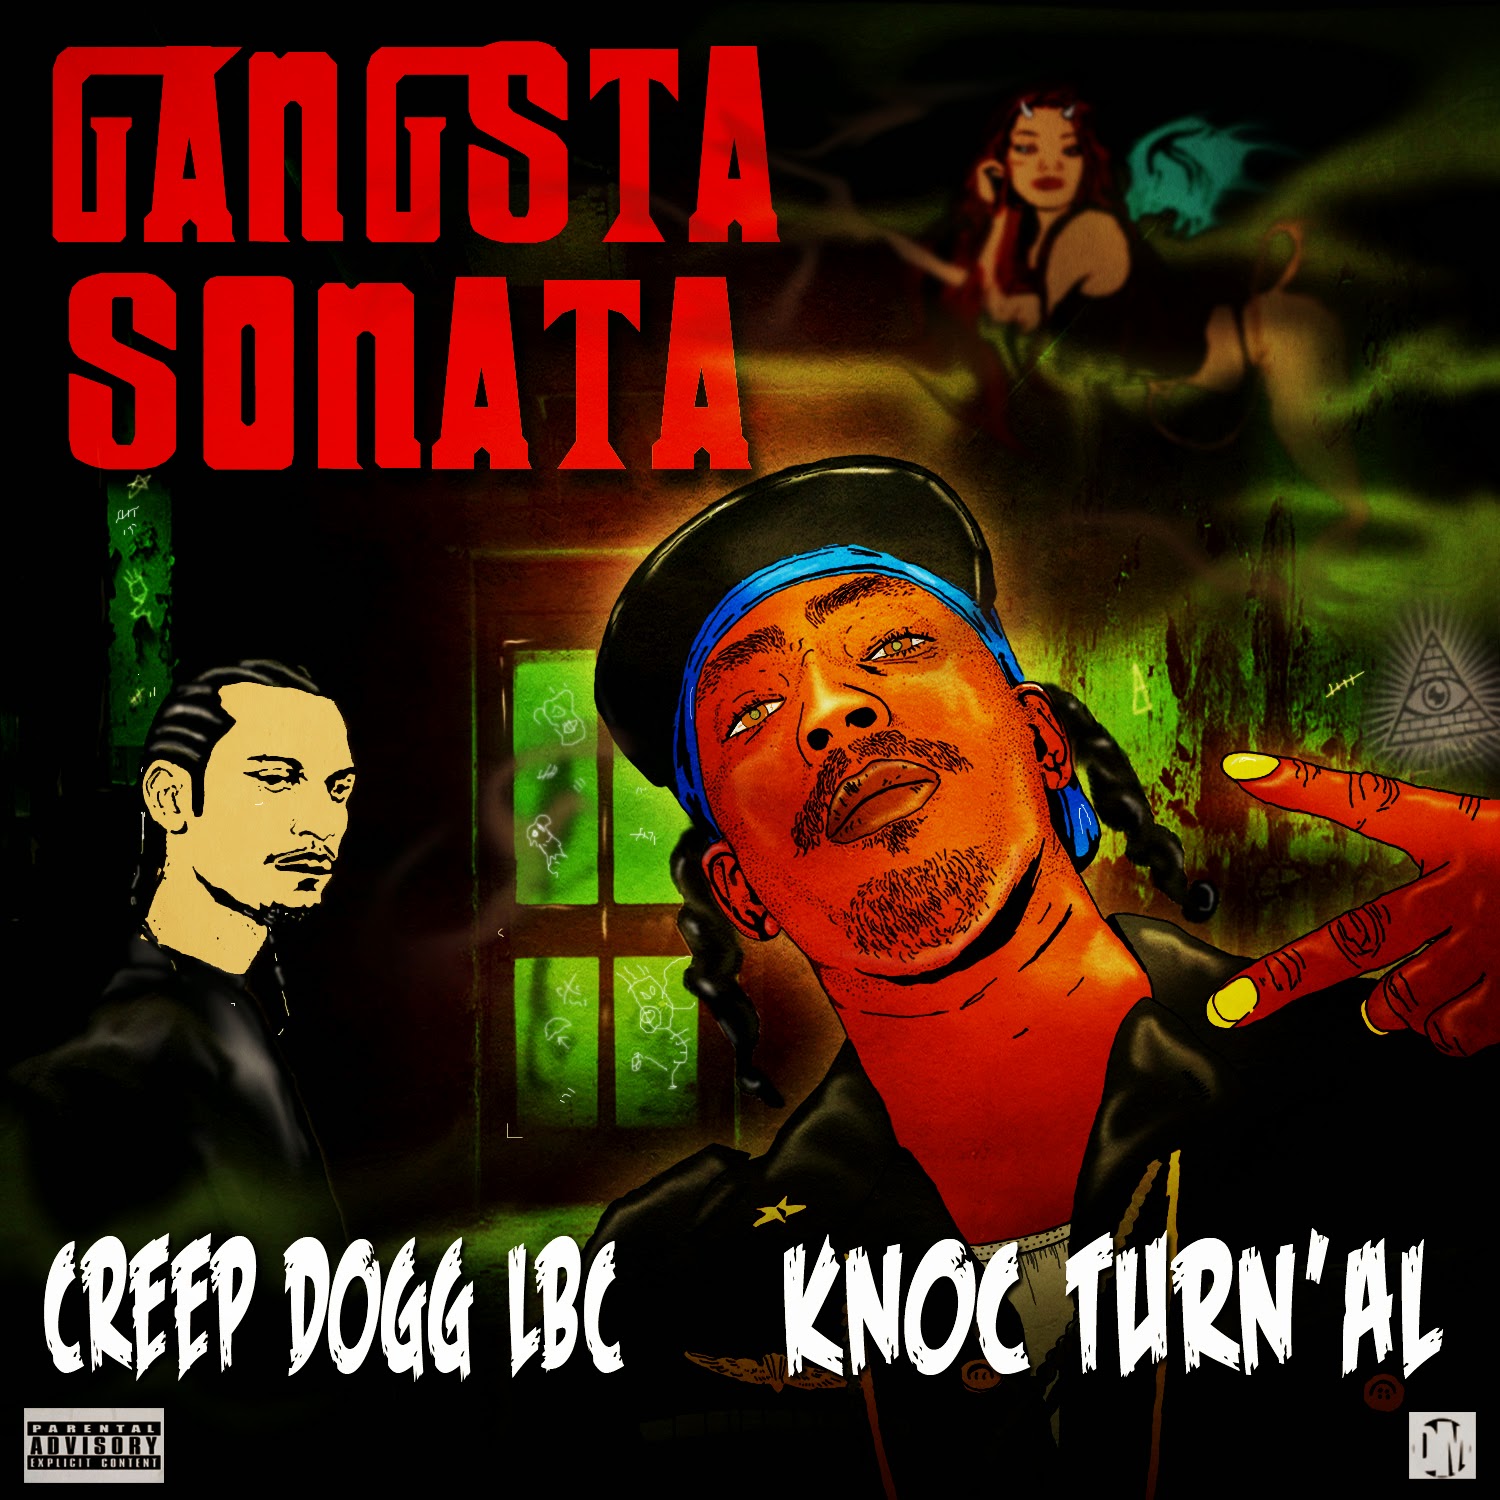 Gangsta Sonata Single Oct. 2013